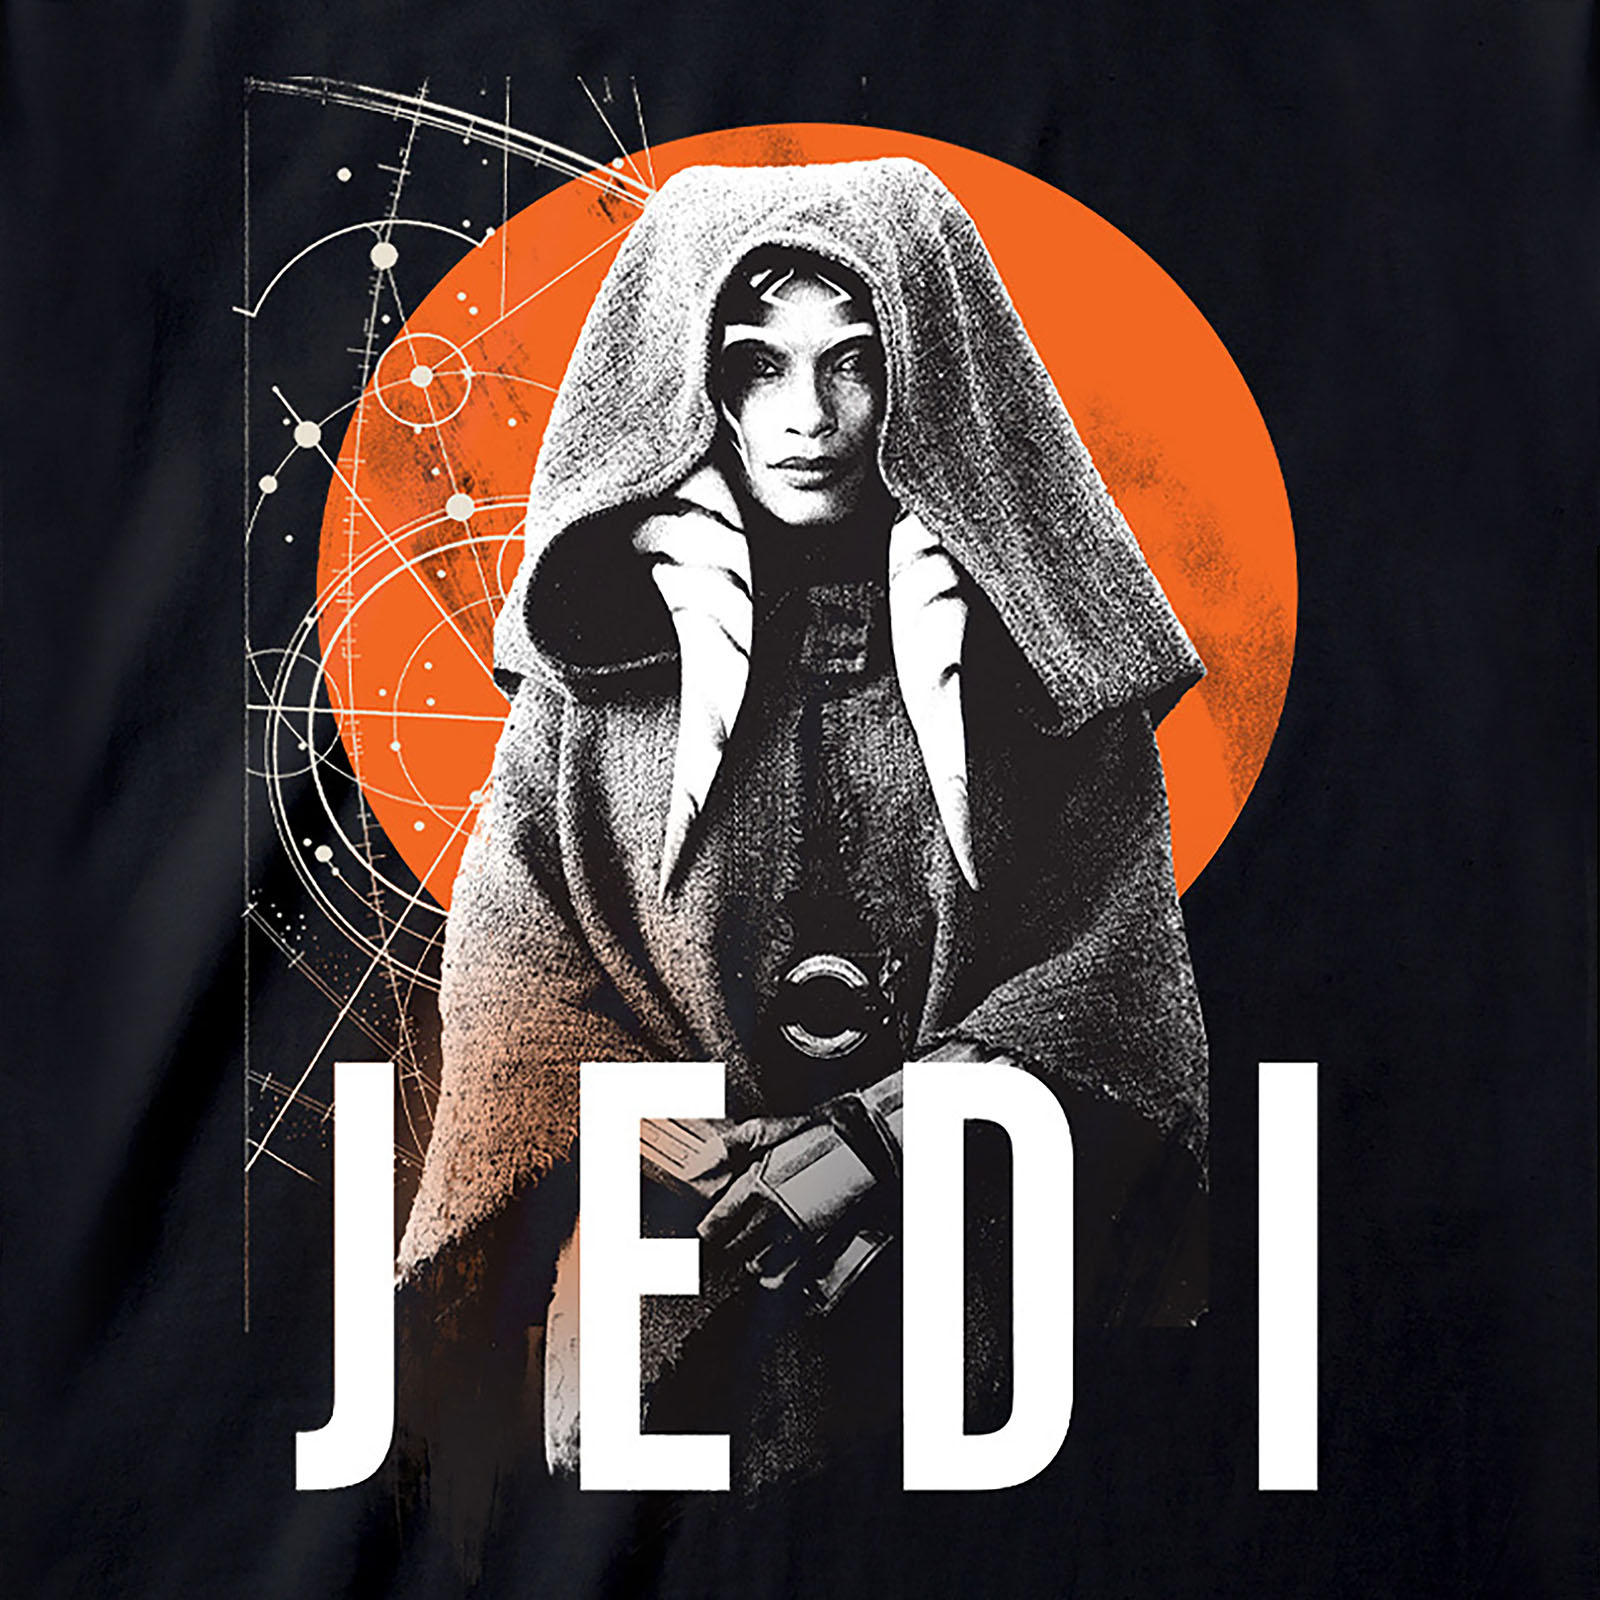 Star Wars - Ahsoka Jedi T-Shirt black